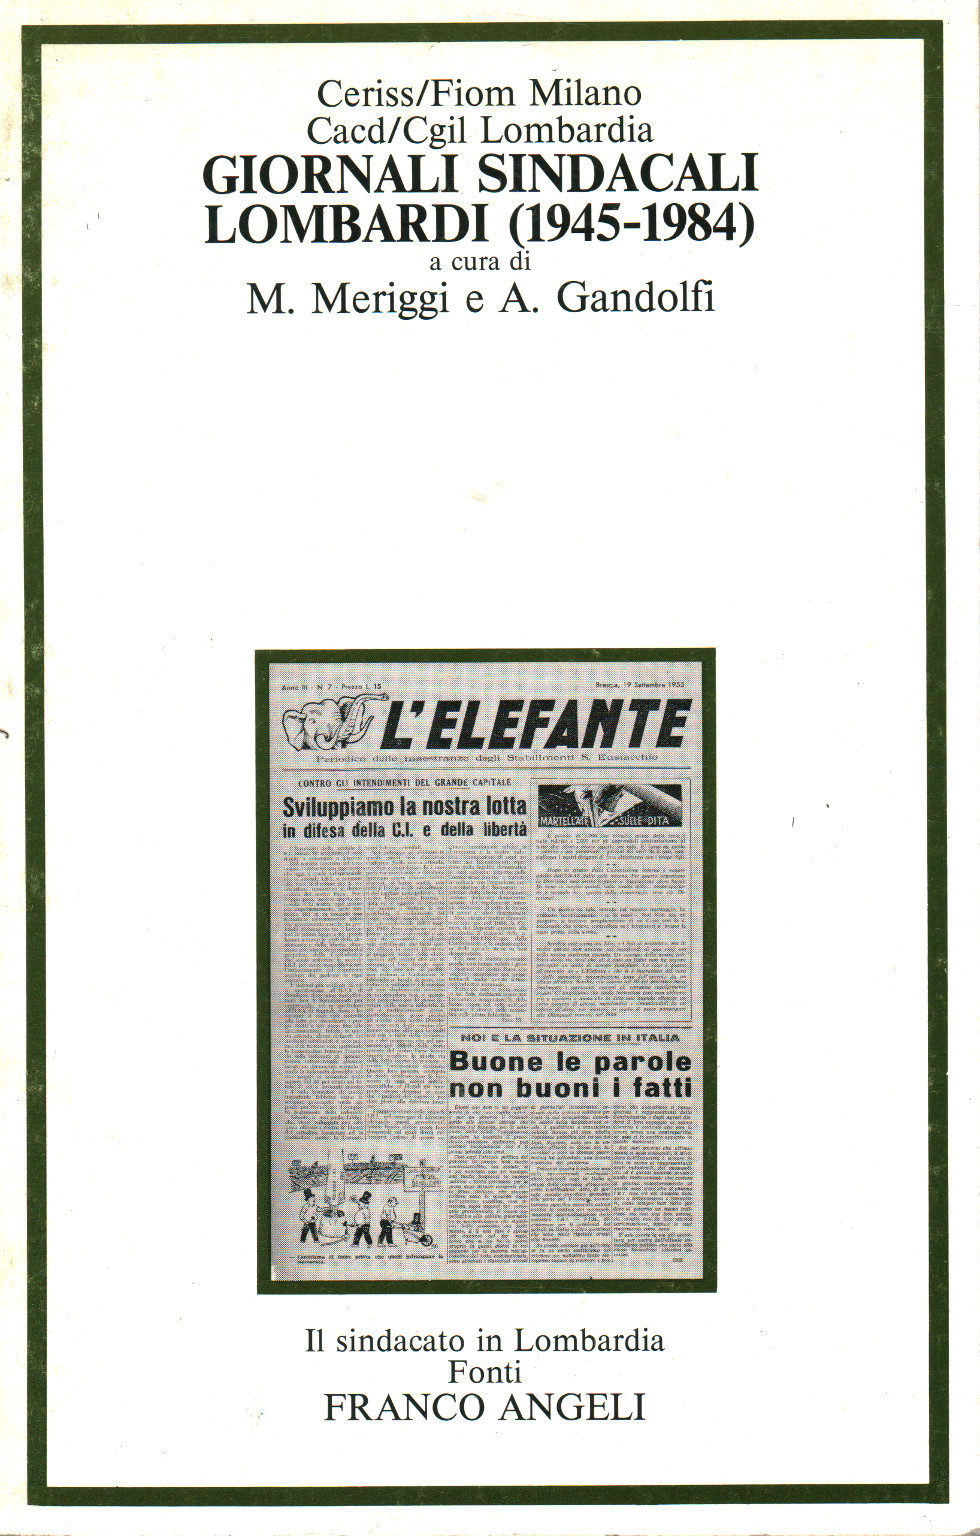 Les journaux, les syndicats lombardi (1945-1984), s.un.